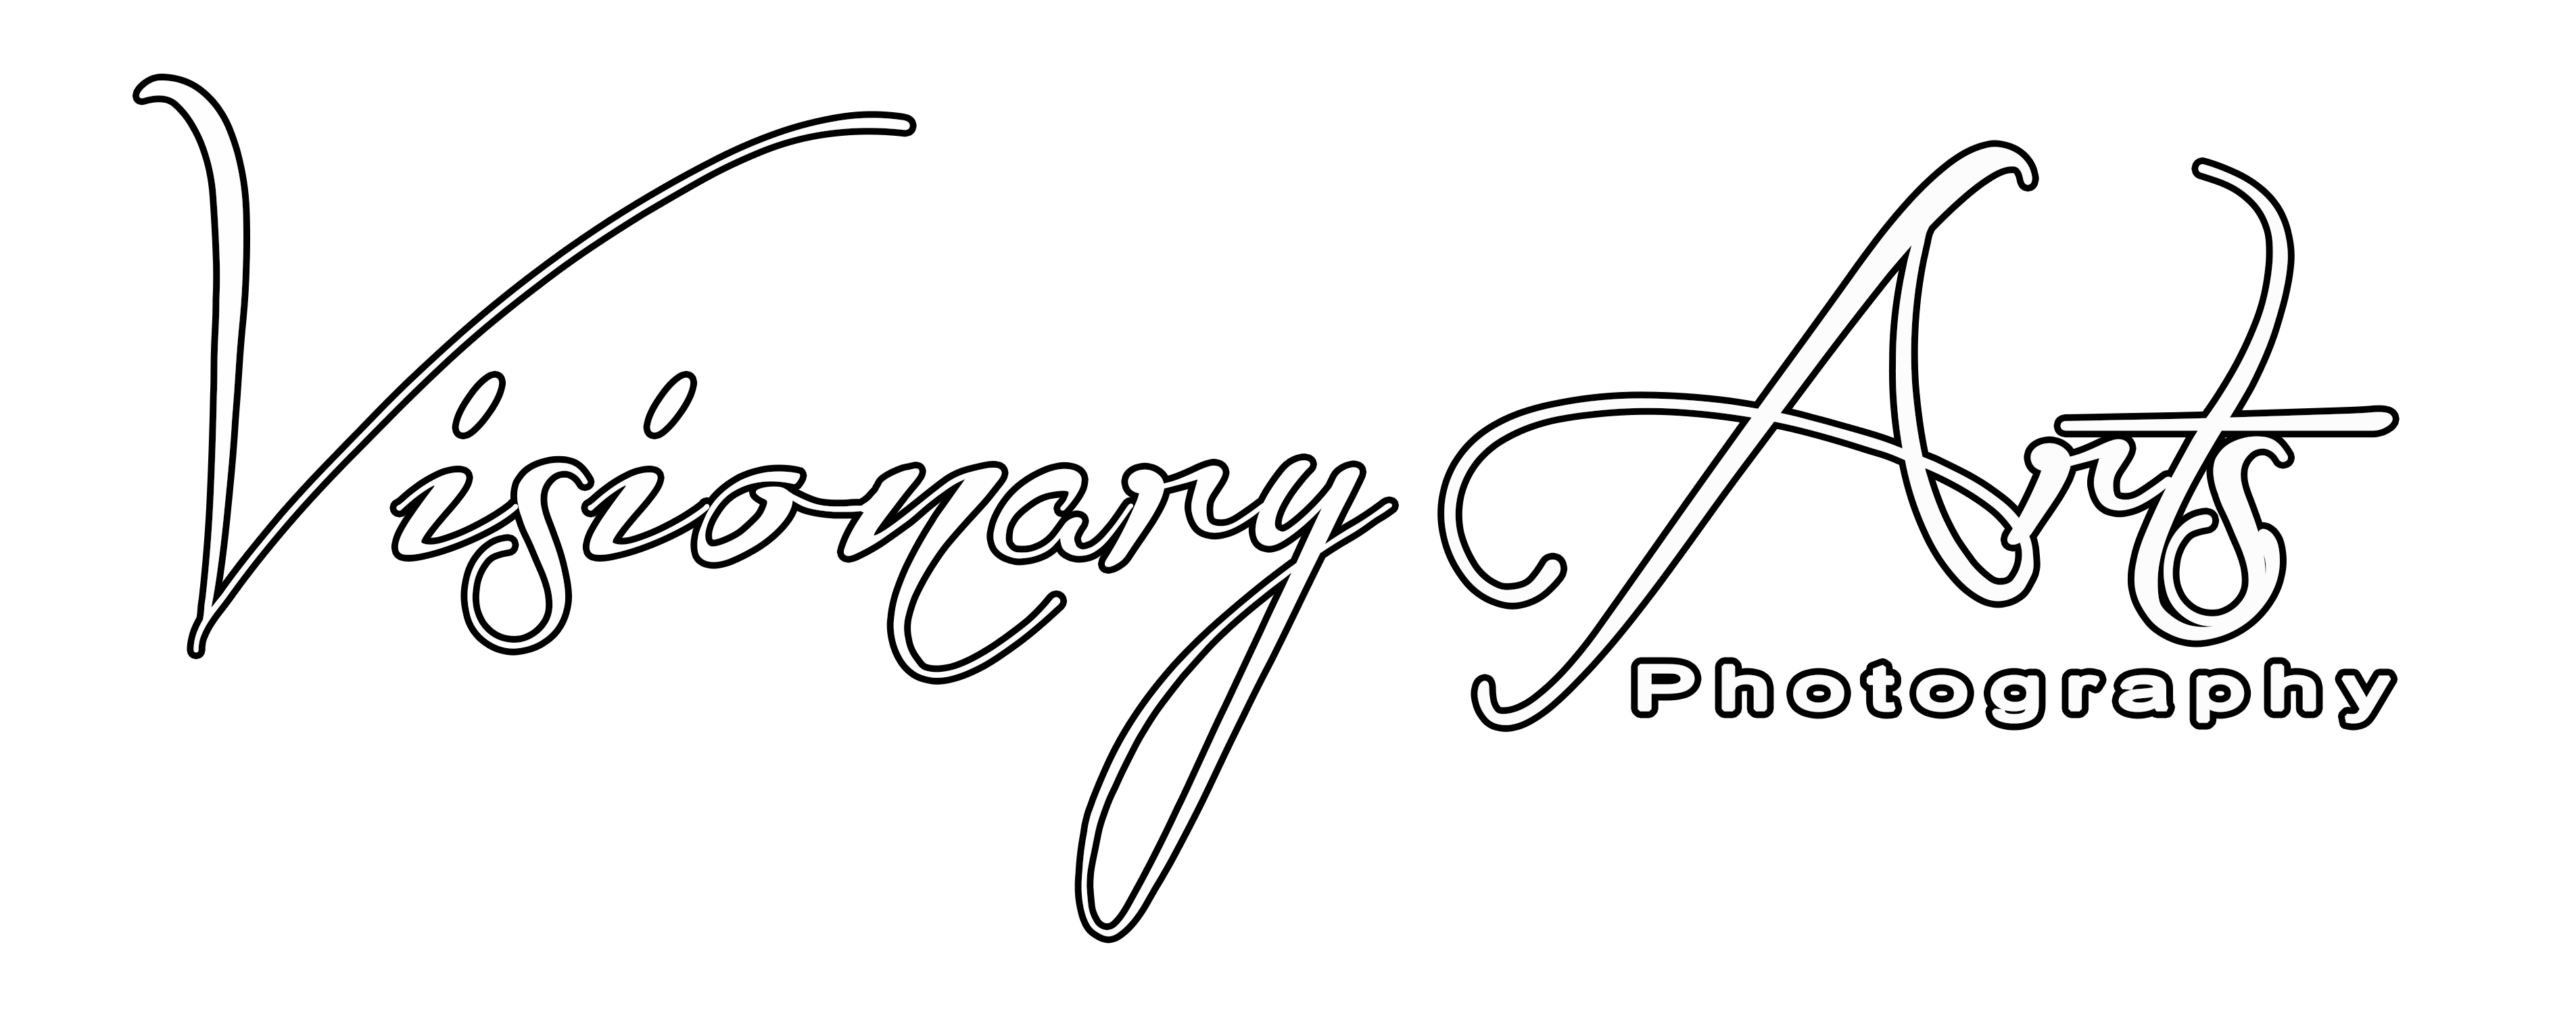 Visionary Arts Photography & Media Center